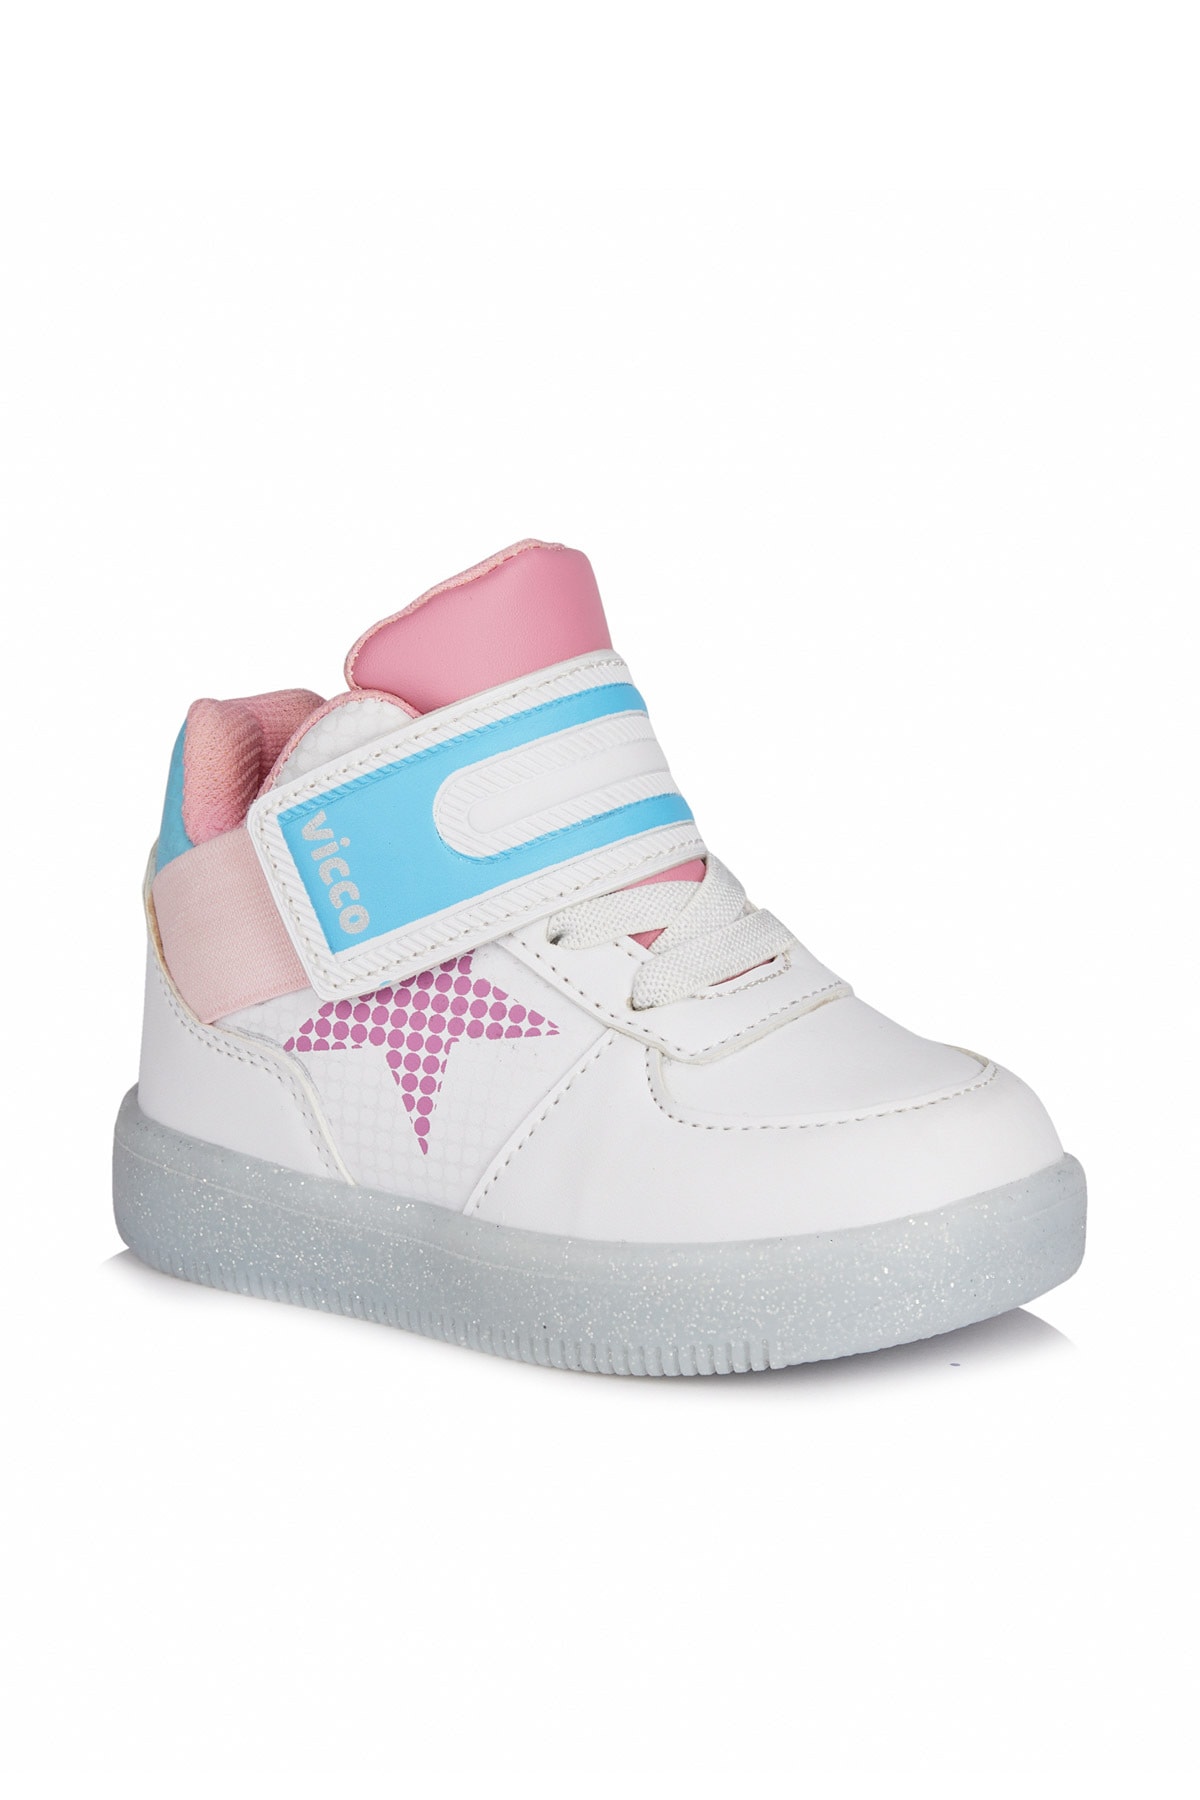 Vicco Magic Kız Bebe Beyaz/pembe Günlük Ayakkabı